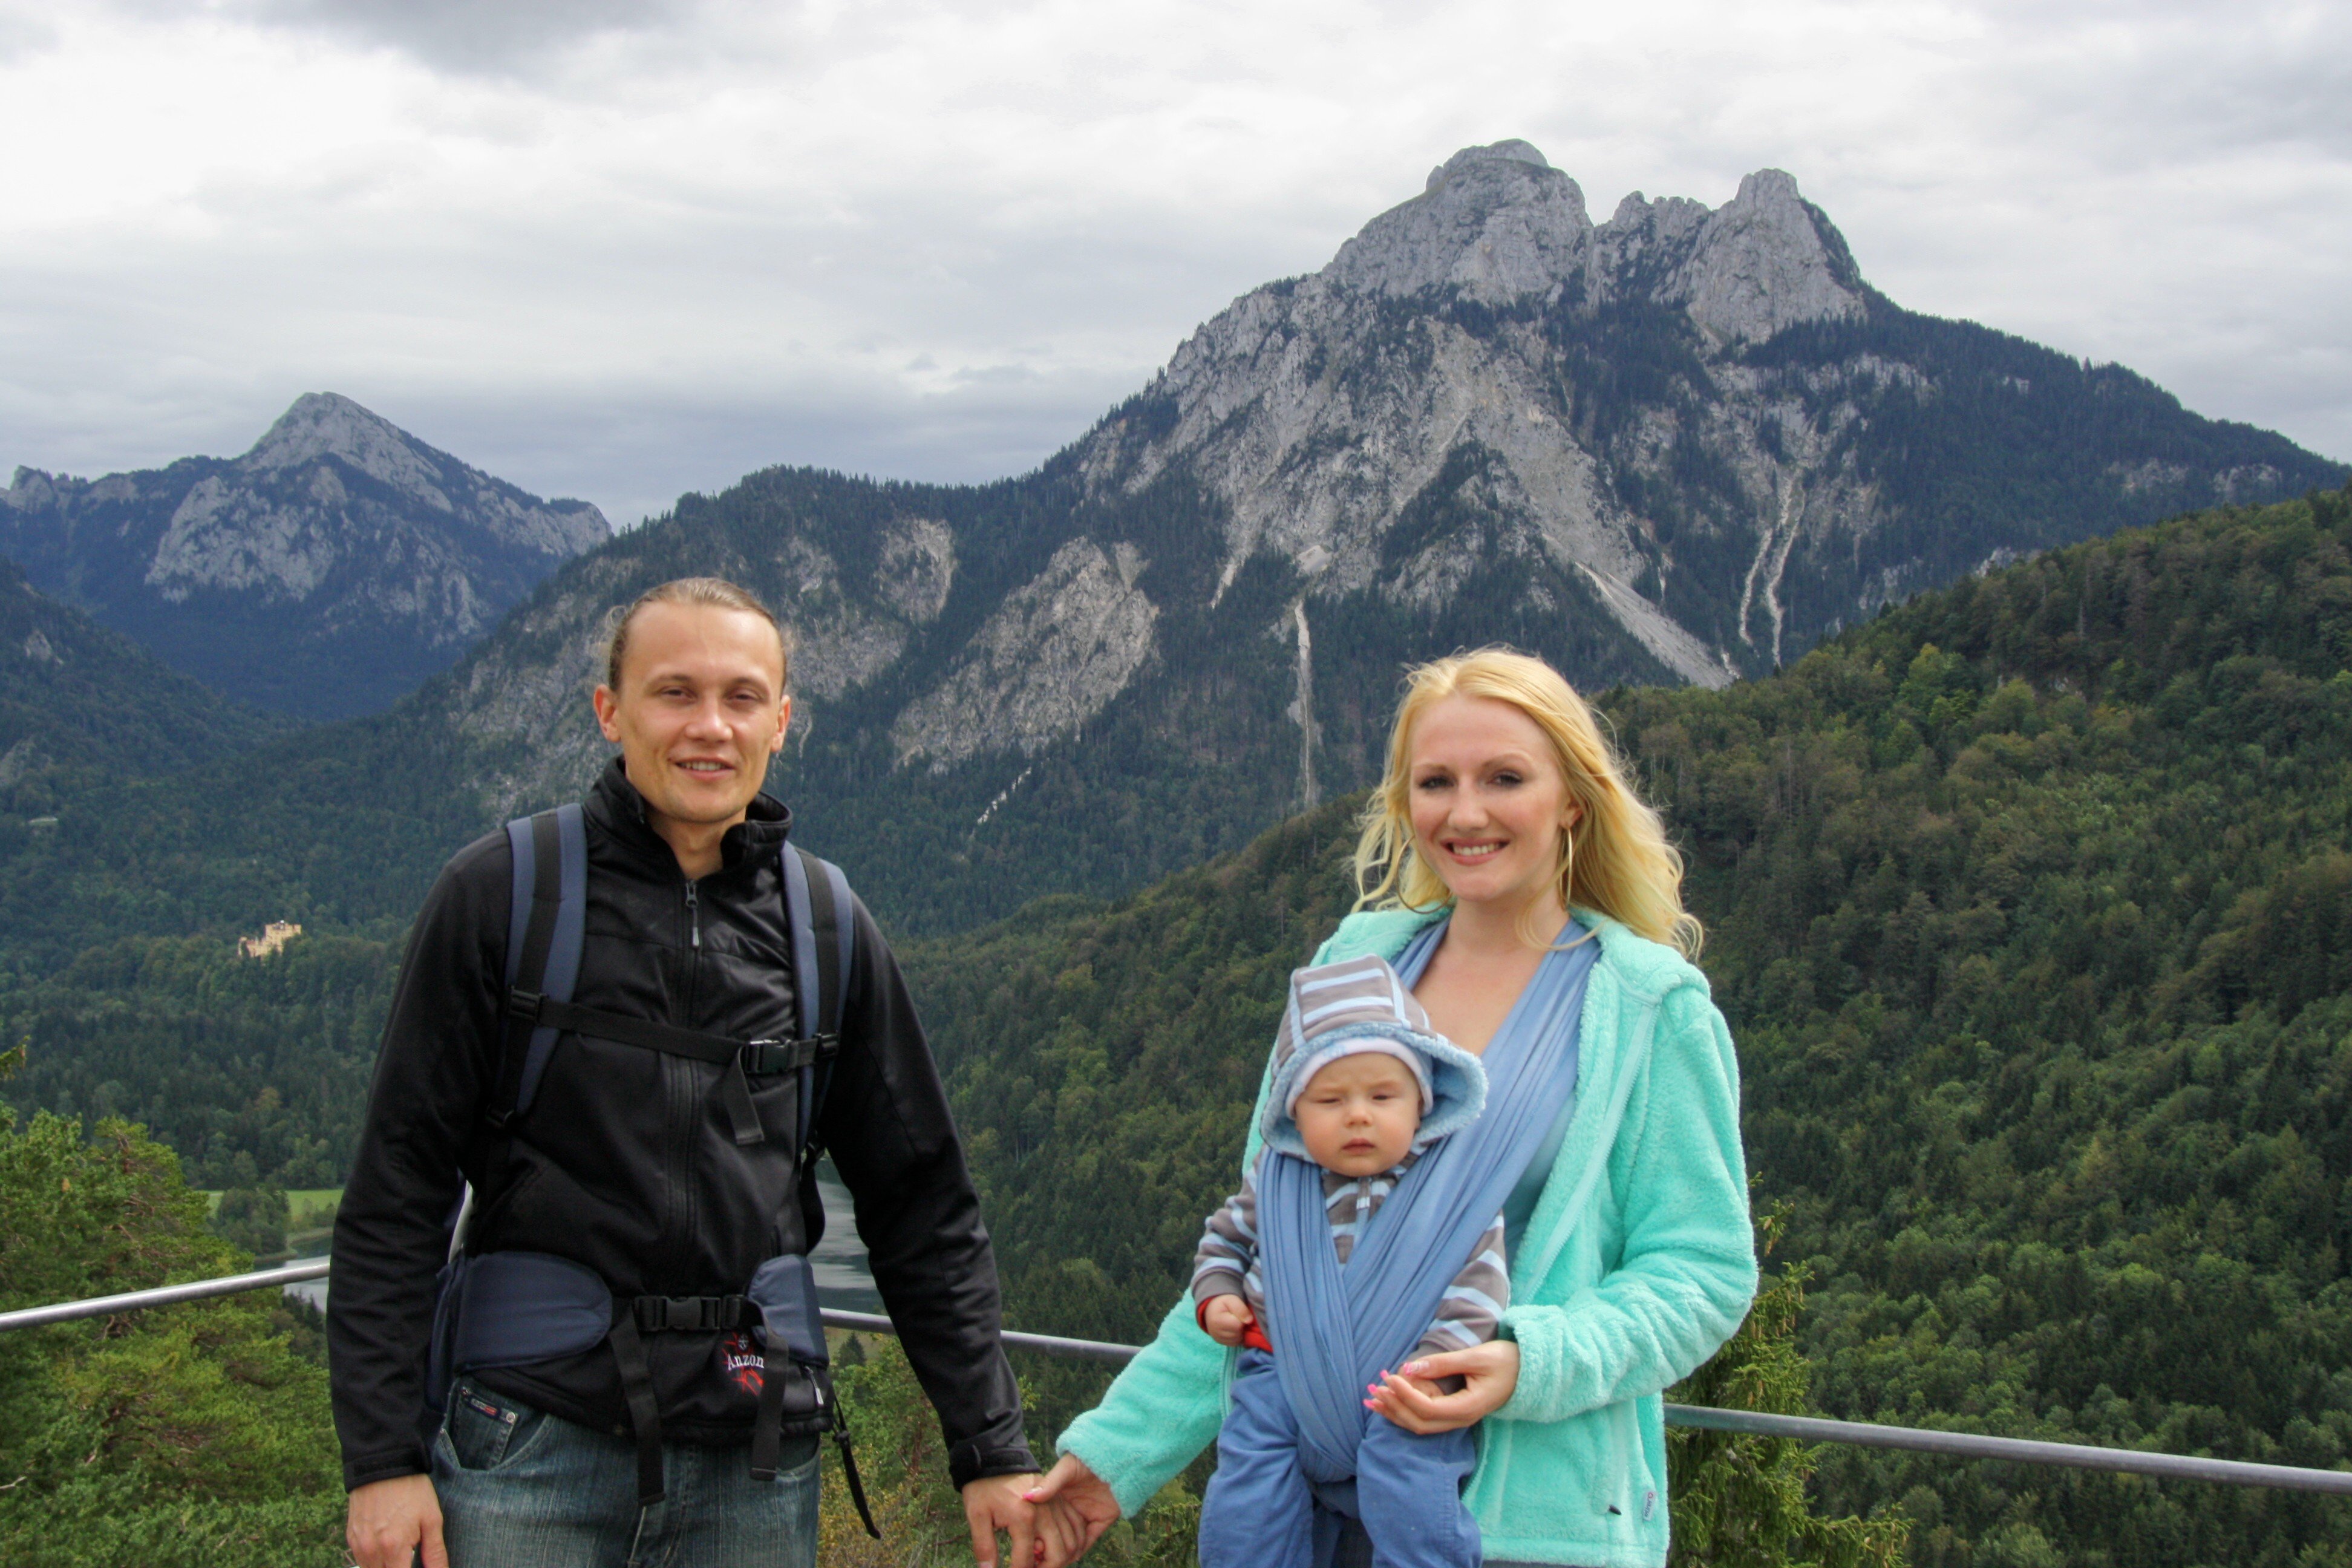 Mit der Familie in den Bergen: Papa (28), Mami in Pumps (24) mit Baby (6 Monate) © Mami-in-Pumps